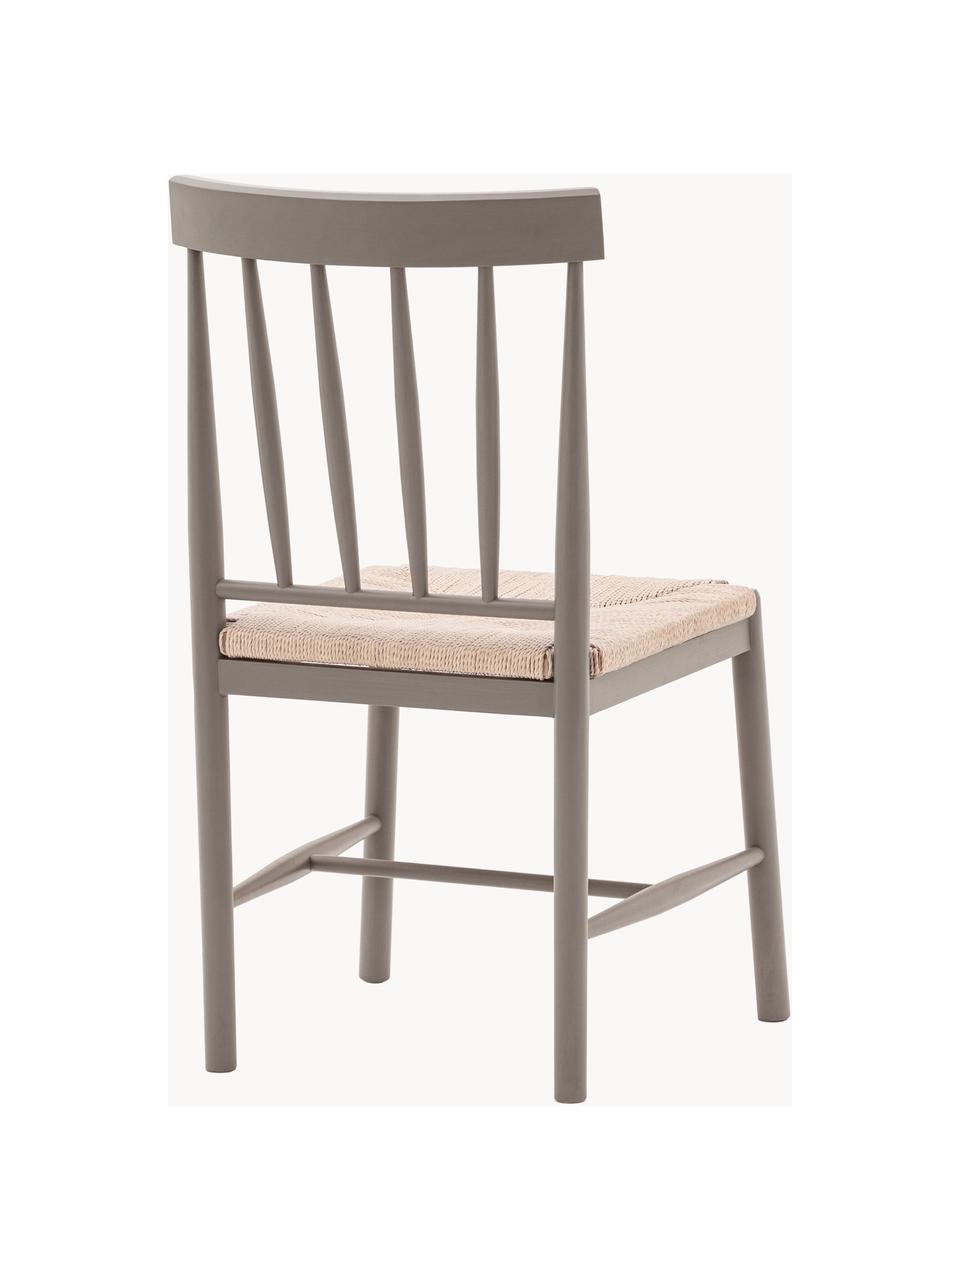 Handgefertigte Stühle Eton aus Buchenholz, 2 Stück, Gestell: Buchenholz, lackiert, Sitzfläche: Binsengeflecht, Taupe, Hellbeige, B 46 x T 45 cm